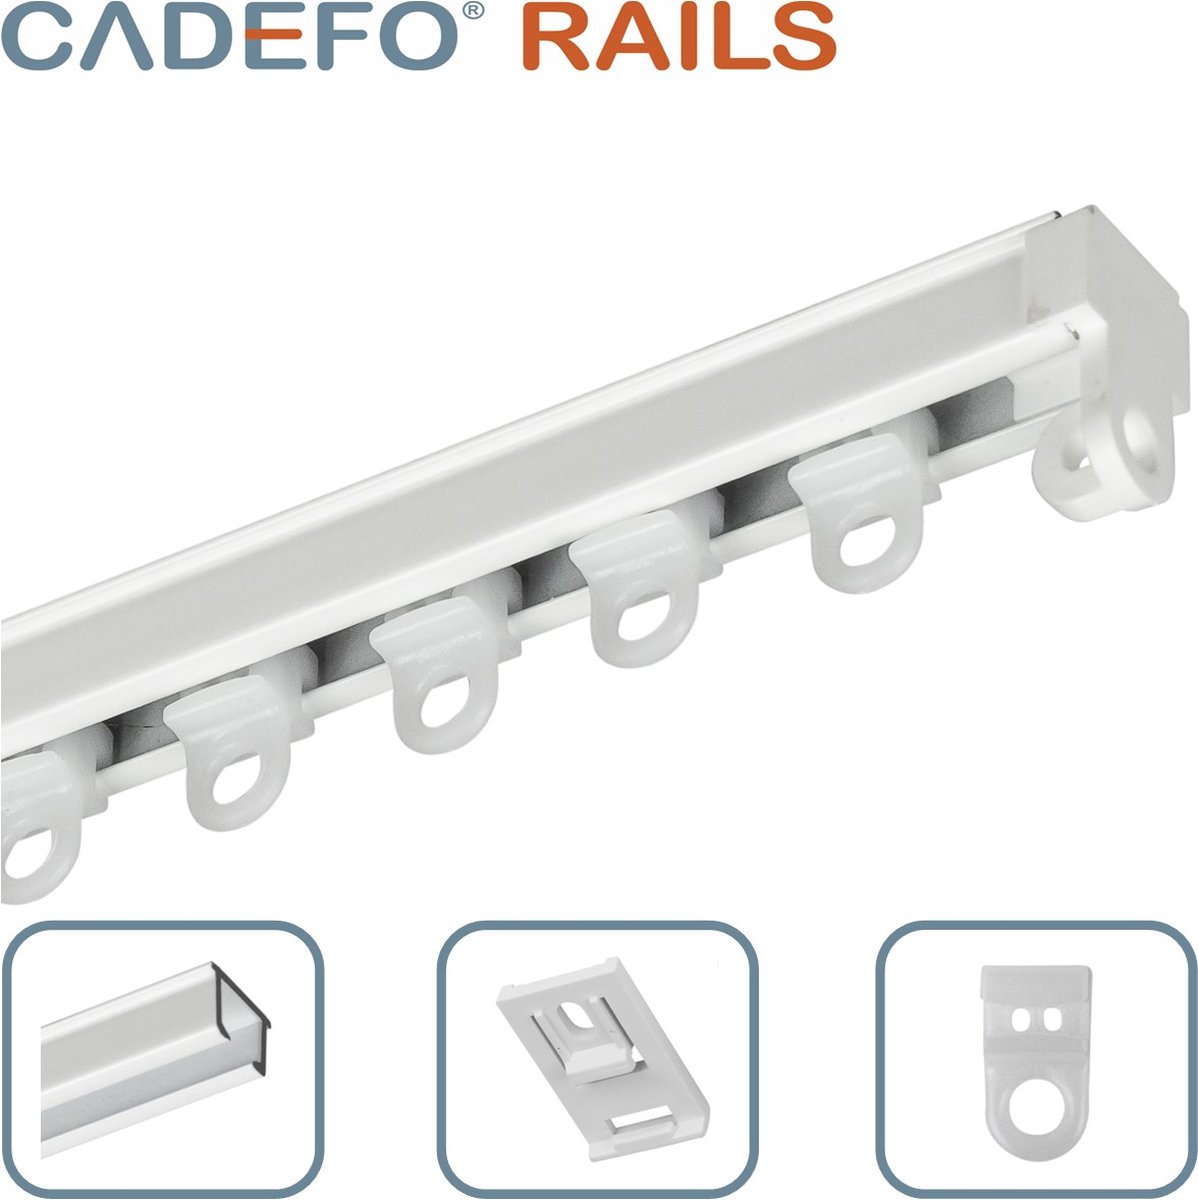 CADEFO RAILS (551 - 600 cm) Gordijnrails - Compleet op maat! - UIT 1 STUK - Leverbaar tot 6 meter - Plafondbevestiging - Lengte 572 cm